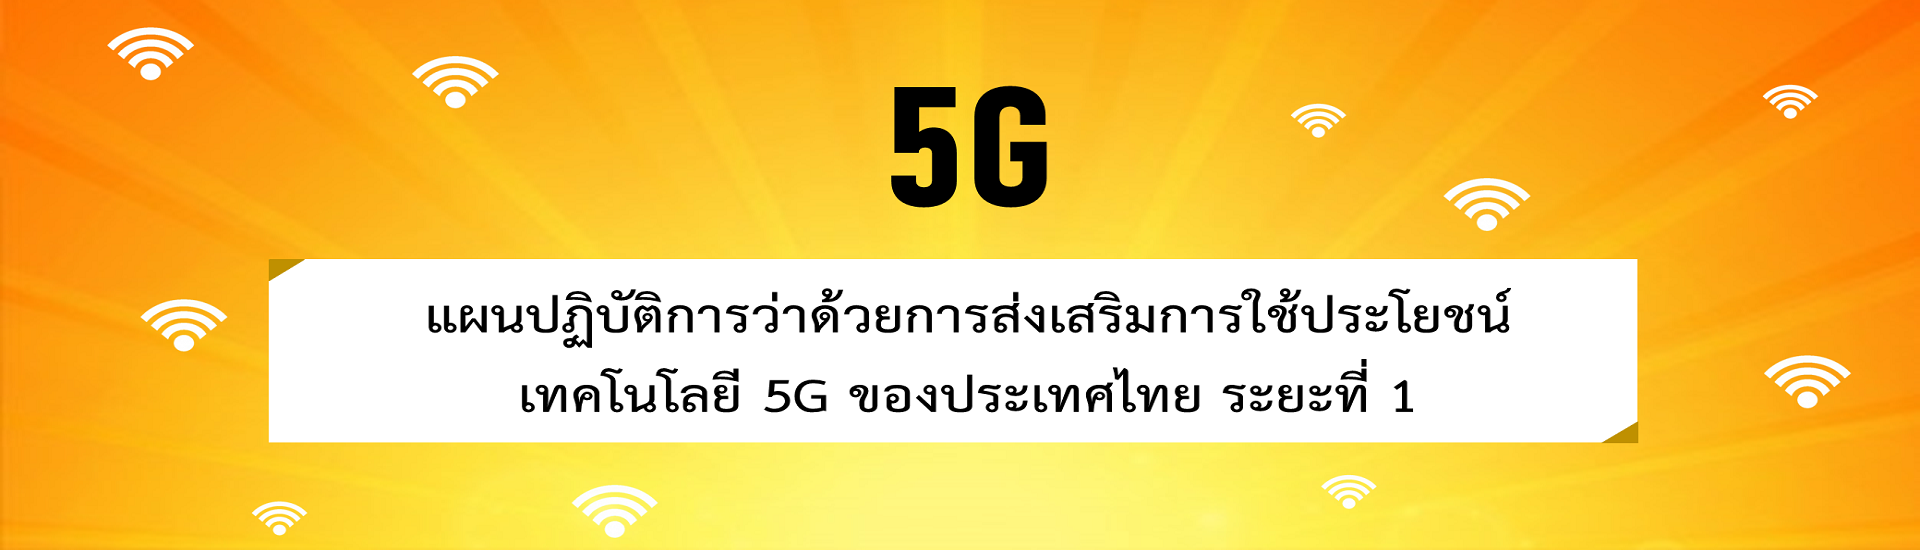 แผนปฏิบัติการว่าด้วยการส่งเสริมการใช้ประโยชน์เทคโนโลยี 5G ของประเทศไทย ระยะที่ 1